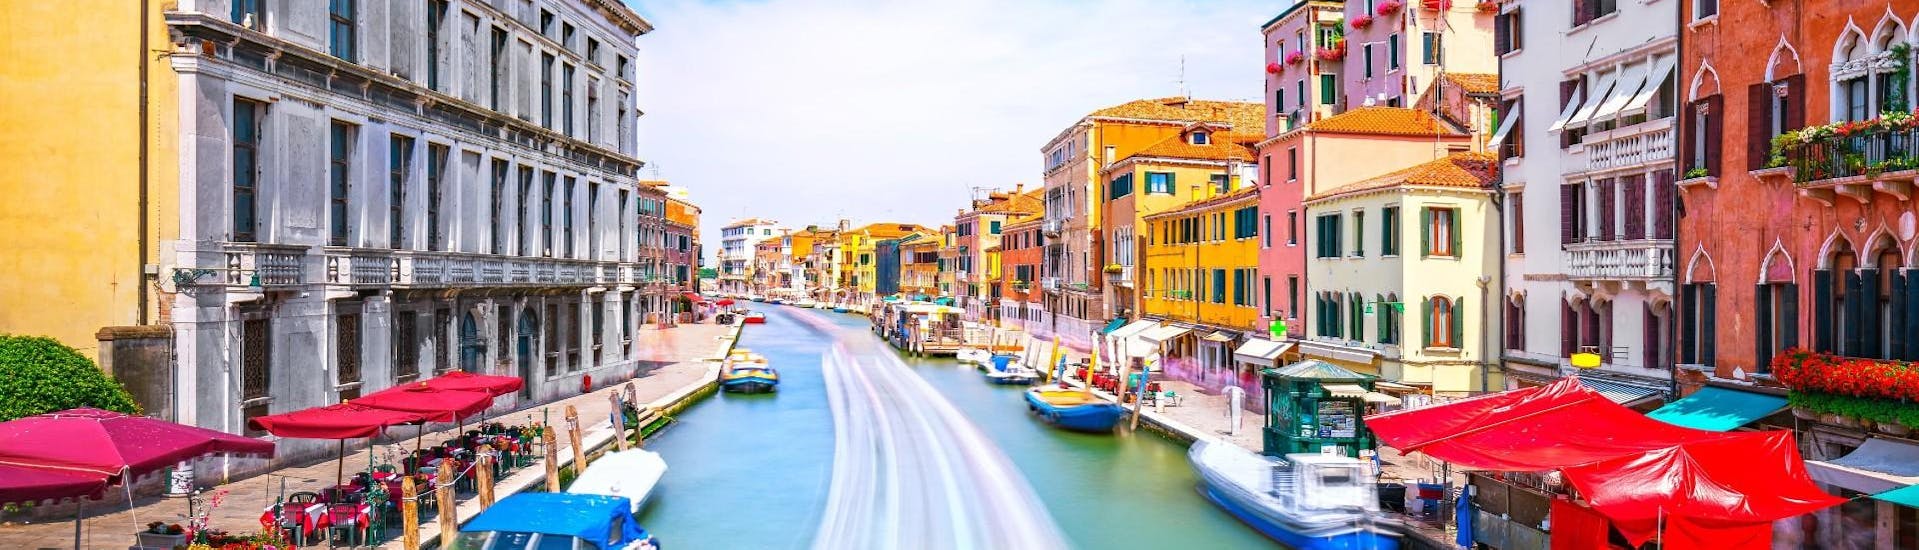 Bootstour durch Venedigs Kanäle und den Canal Grande.